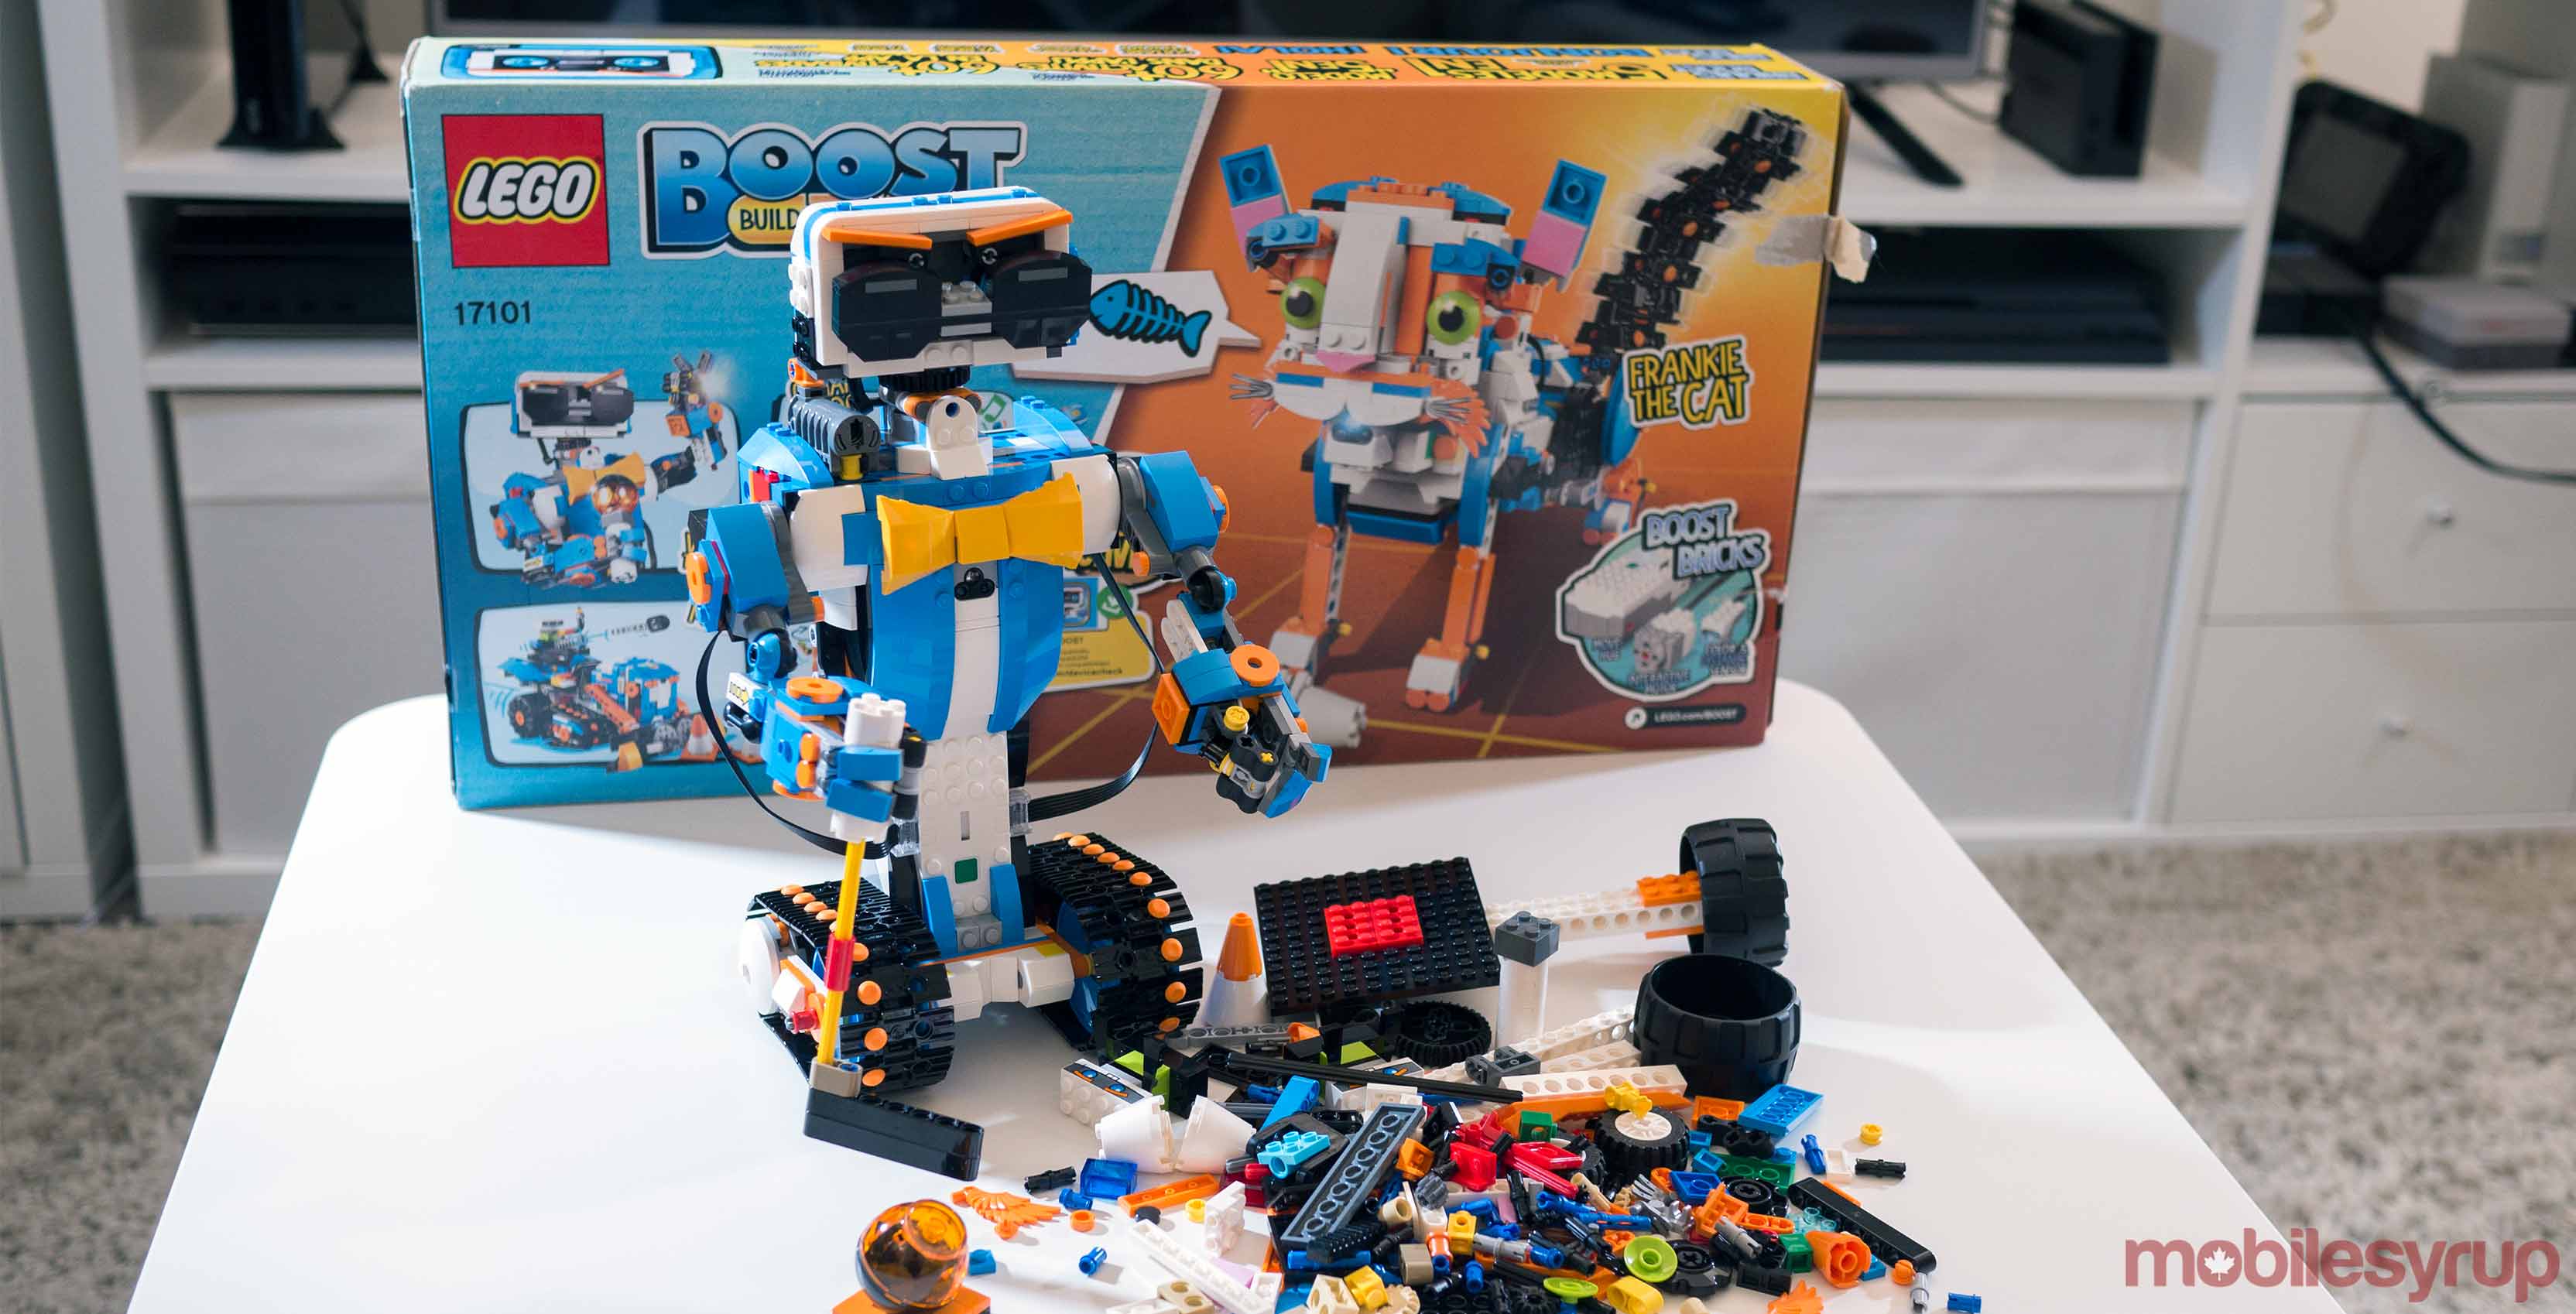 Lego Boost set